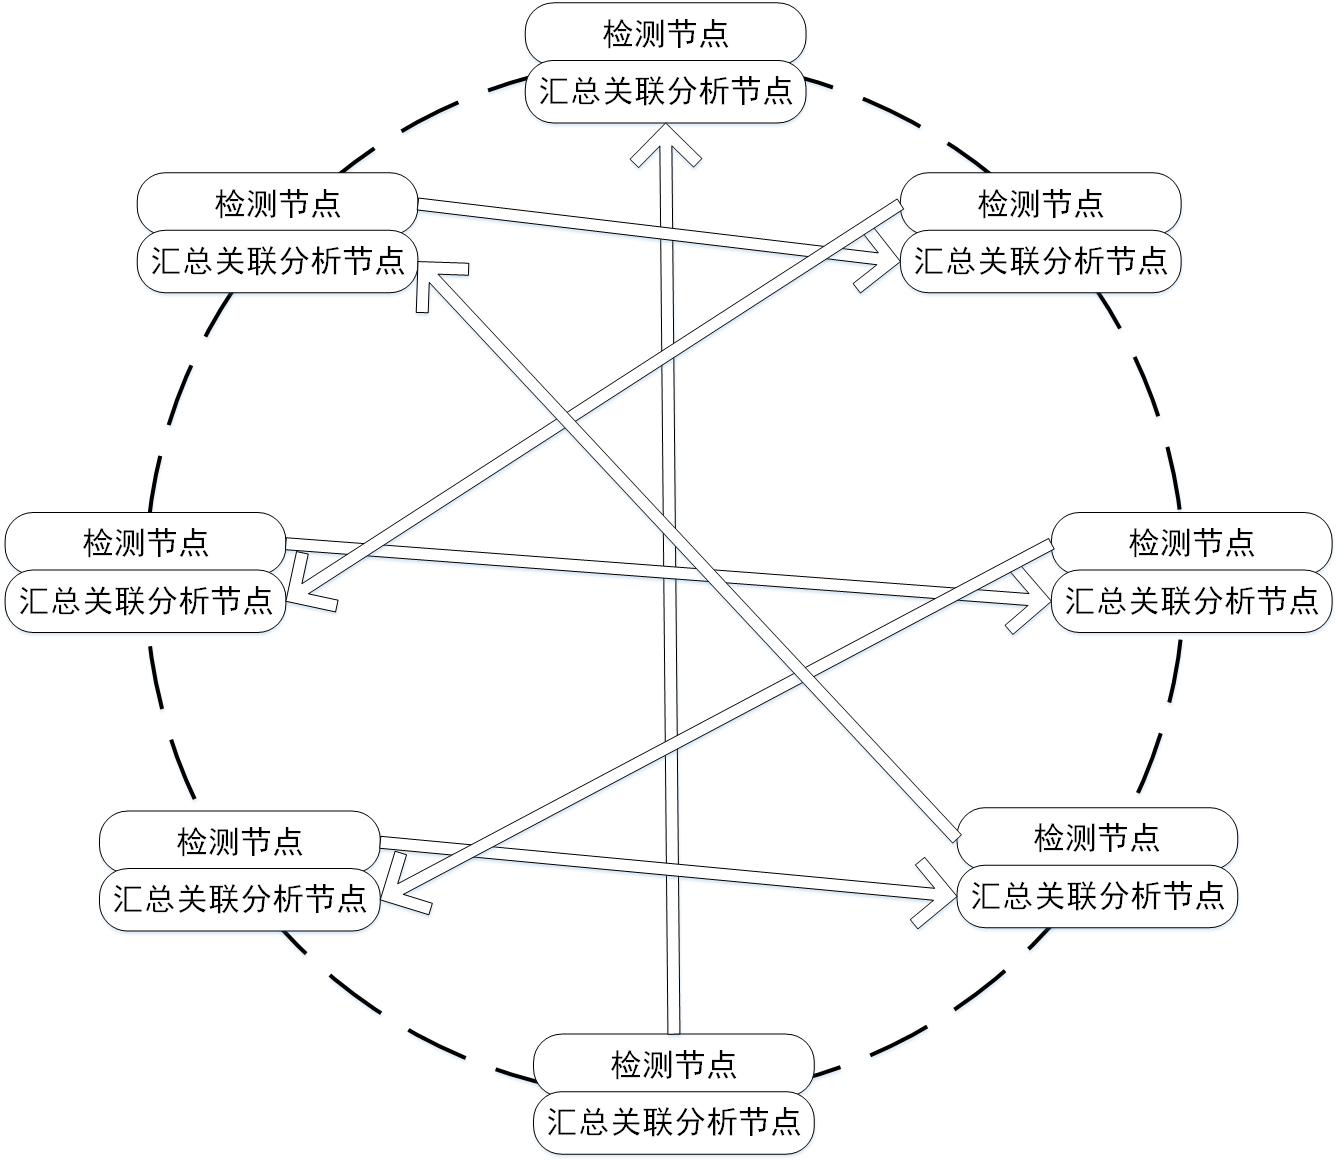 图 9-8 完全分布式结构